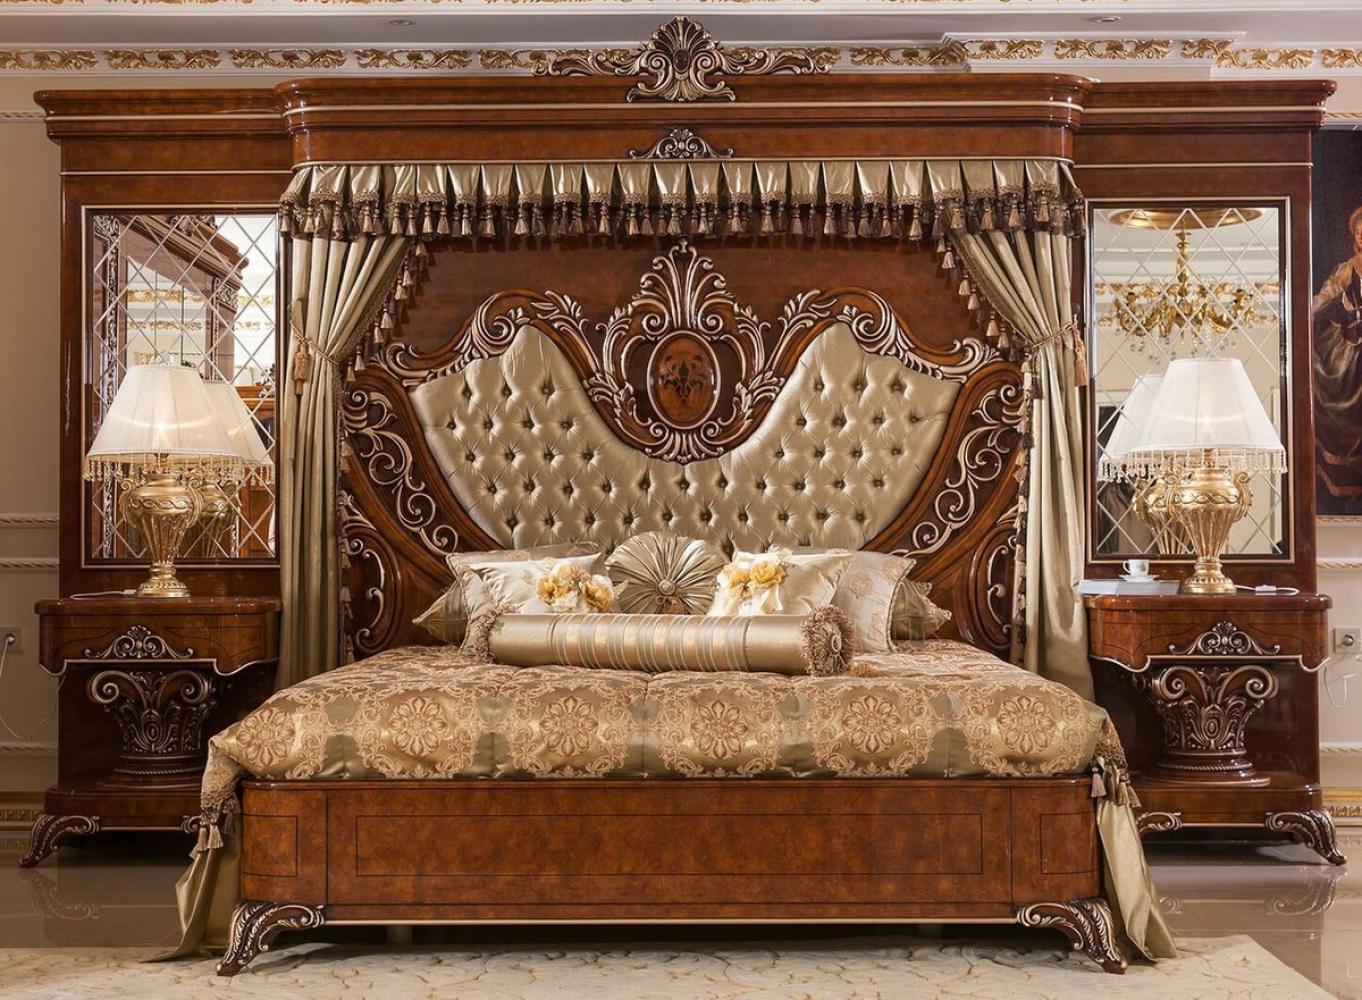 Casa Padrino Luxus Barock Schlafzimmer Set Gold / Braun / Bronzefarben - 1 Doppelbett mit Kopfteil und Rückwand & 2 Nachtkommoden - Schlafzimmer Möbel im Barockstil - Edel & Prunkvoll Bild 1